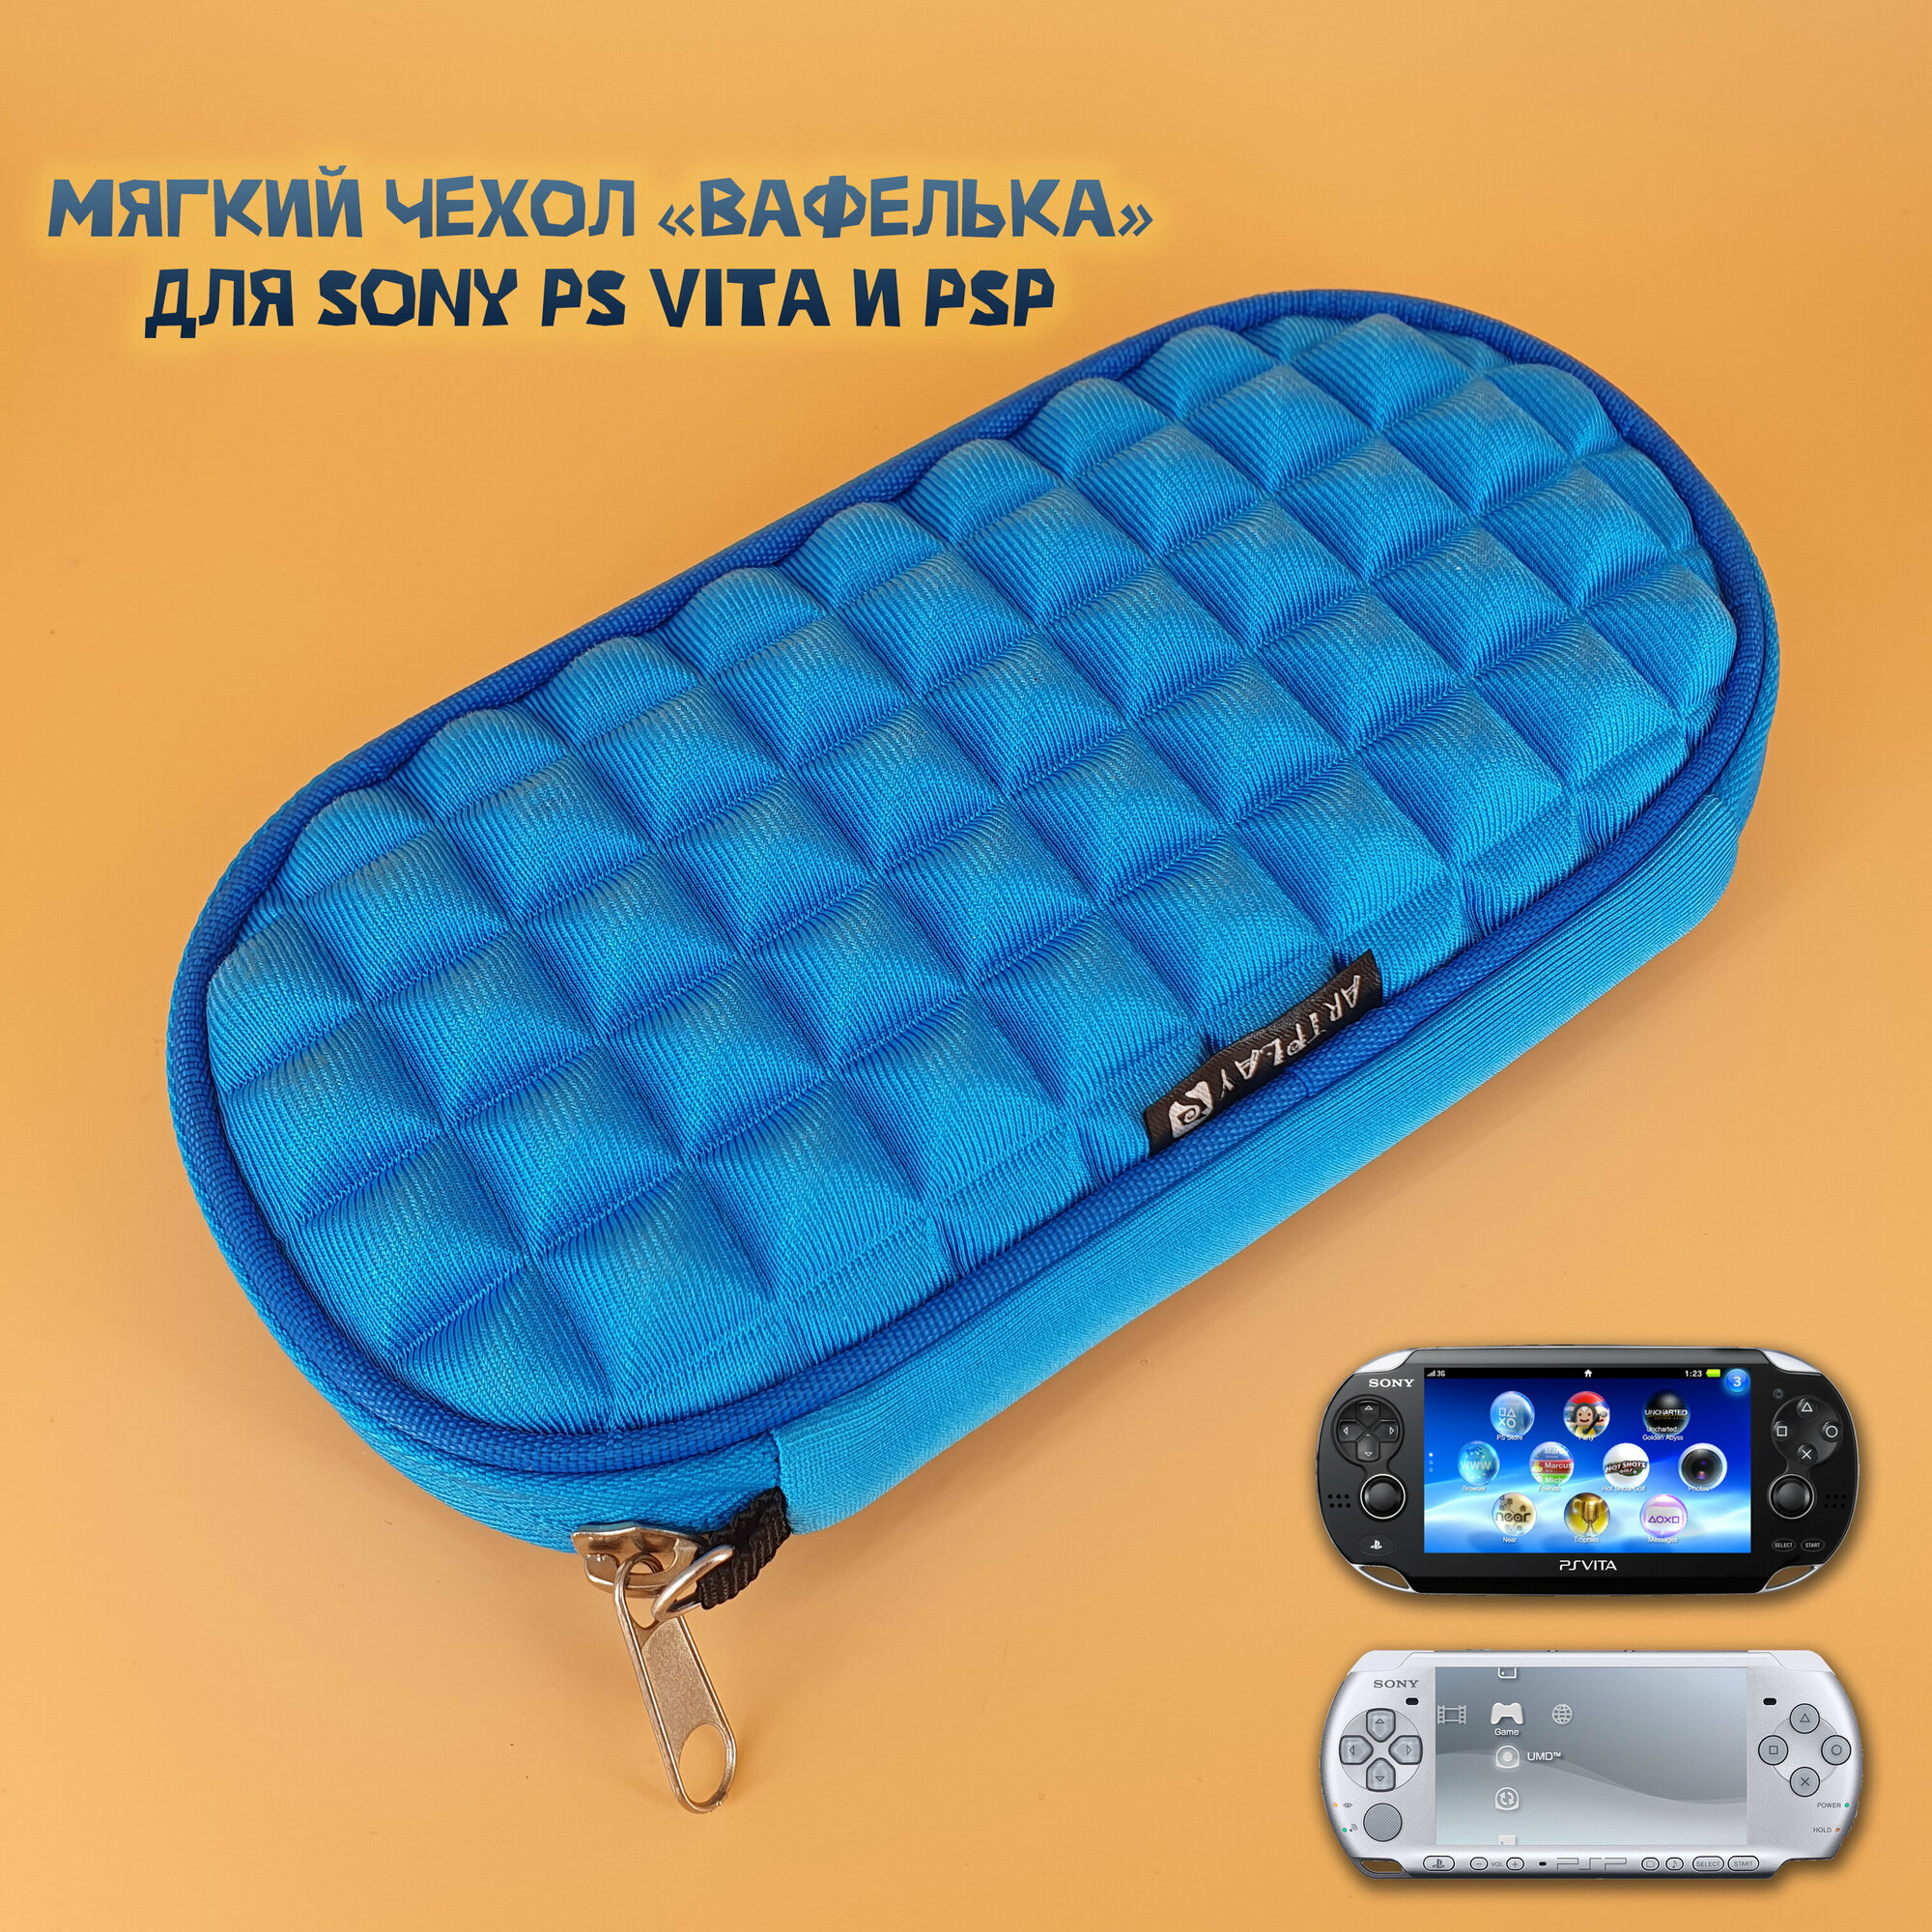 Чехол защитный для Sony PS VIta и PSP 1000/2000/3000, кейс для консоли и аксессуаров, на молнии, синий (вафелька)